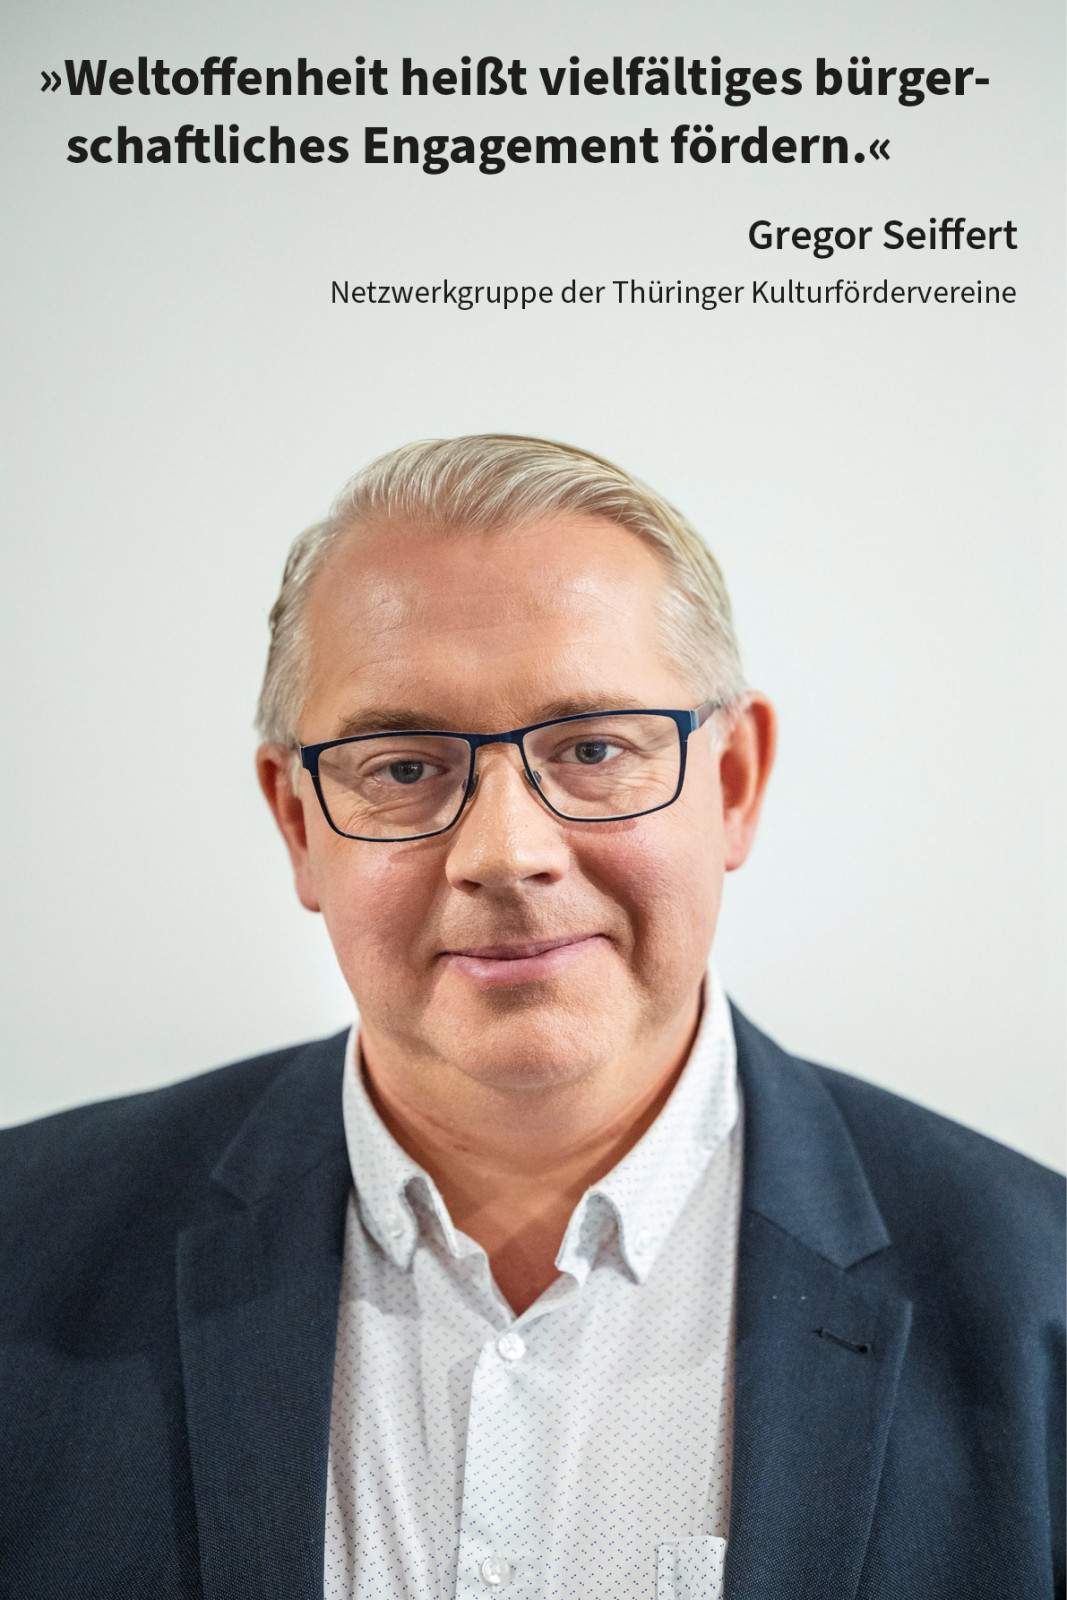  »Weltoffenheit heißt vielfältiges bürgerschaftliches Engagement fördern.«, Gregor Seiffert, Netzwerkgruppe der Thüringer Kulturfördervereine